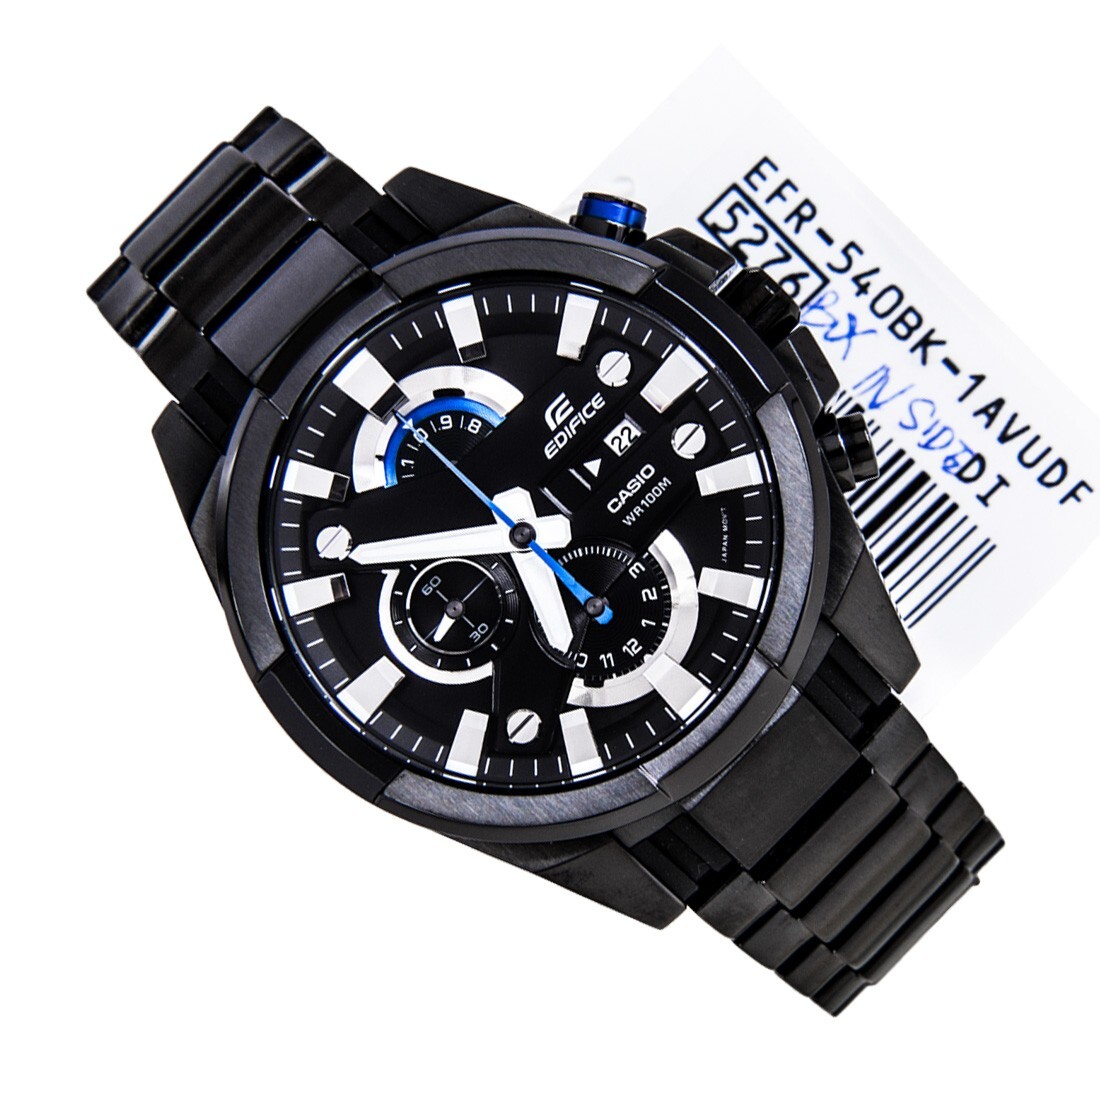 Đồng hồ nam Casio Edifice EFR-540BK-1AV